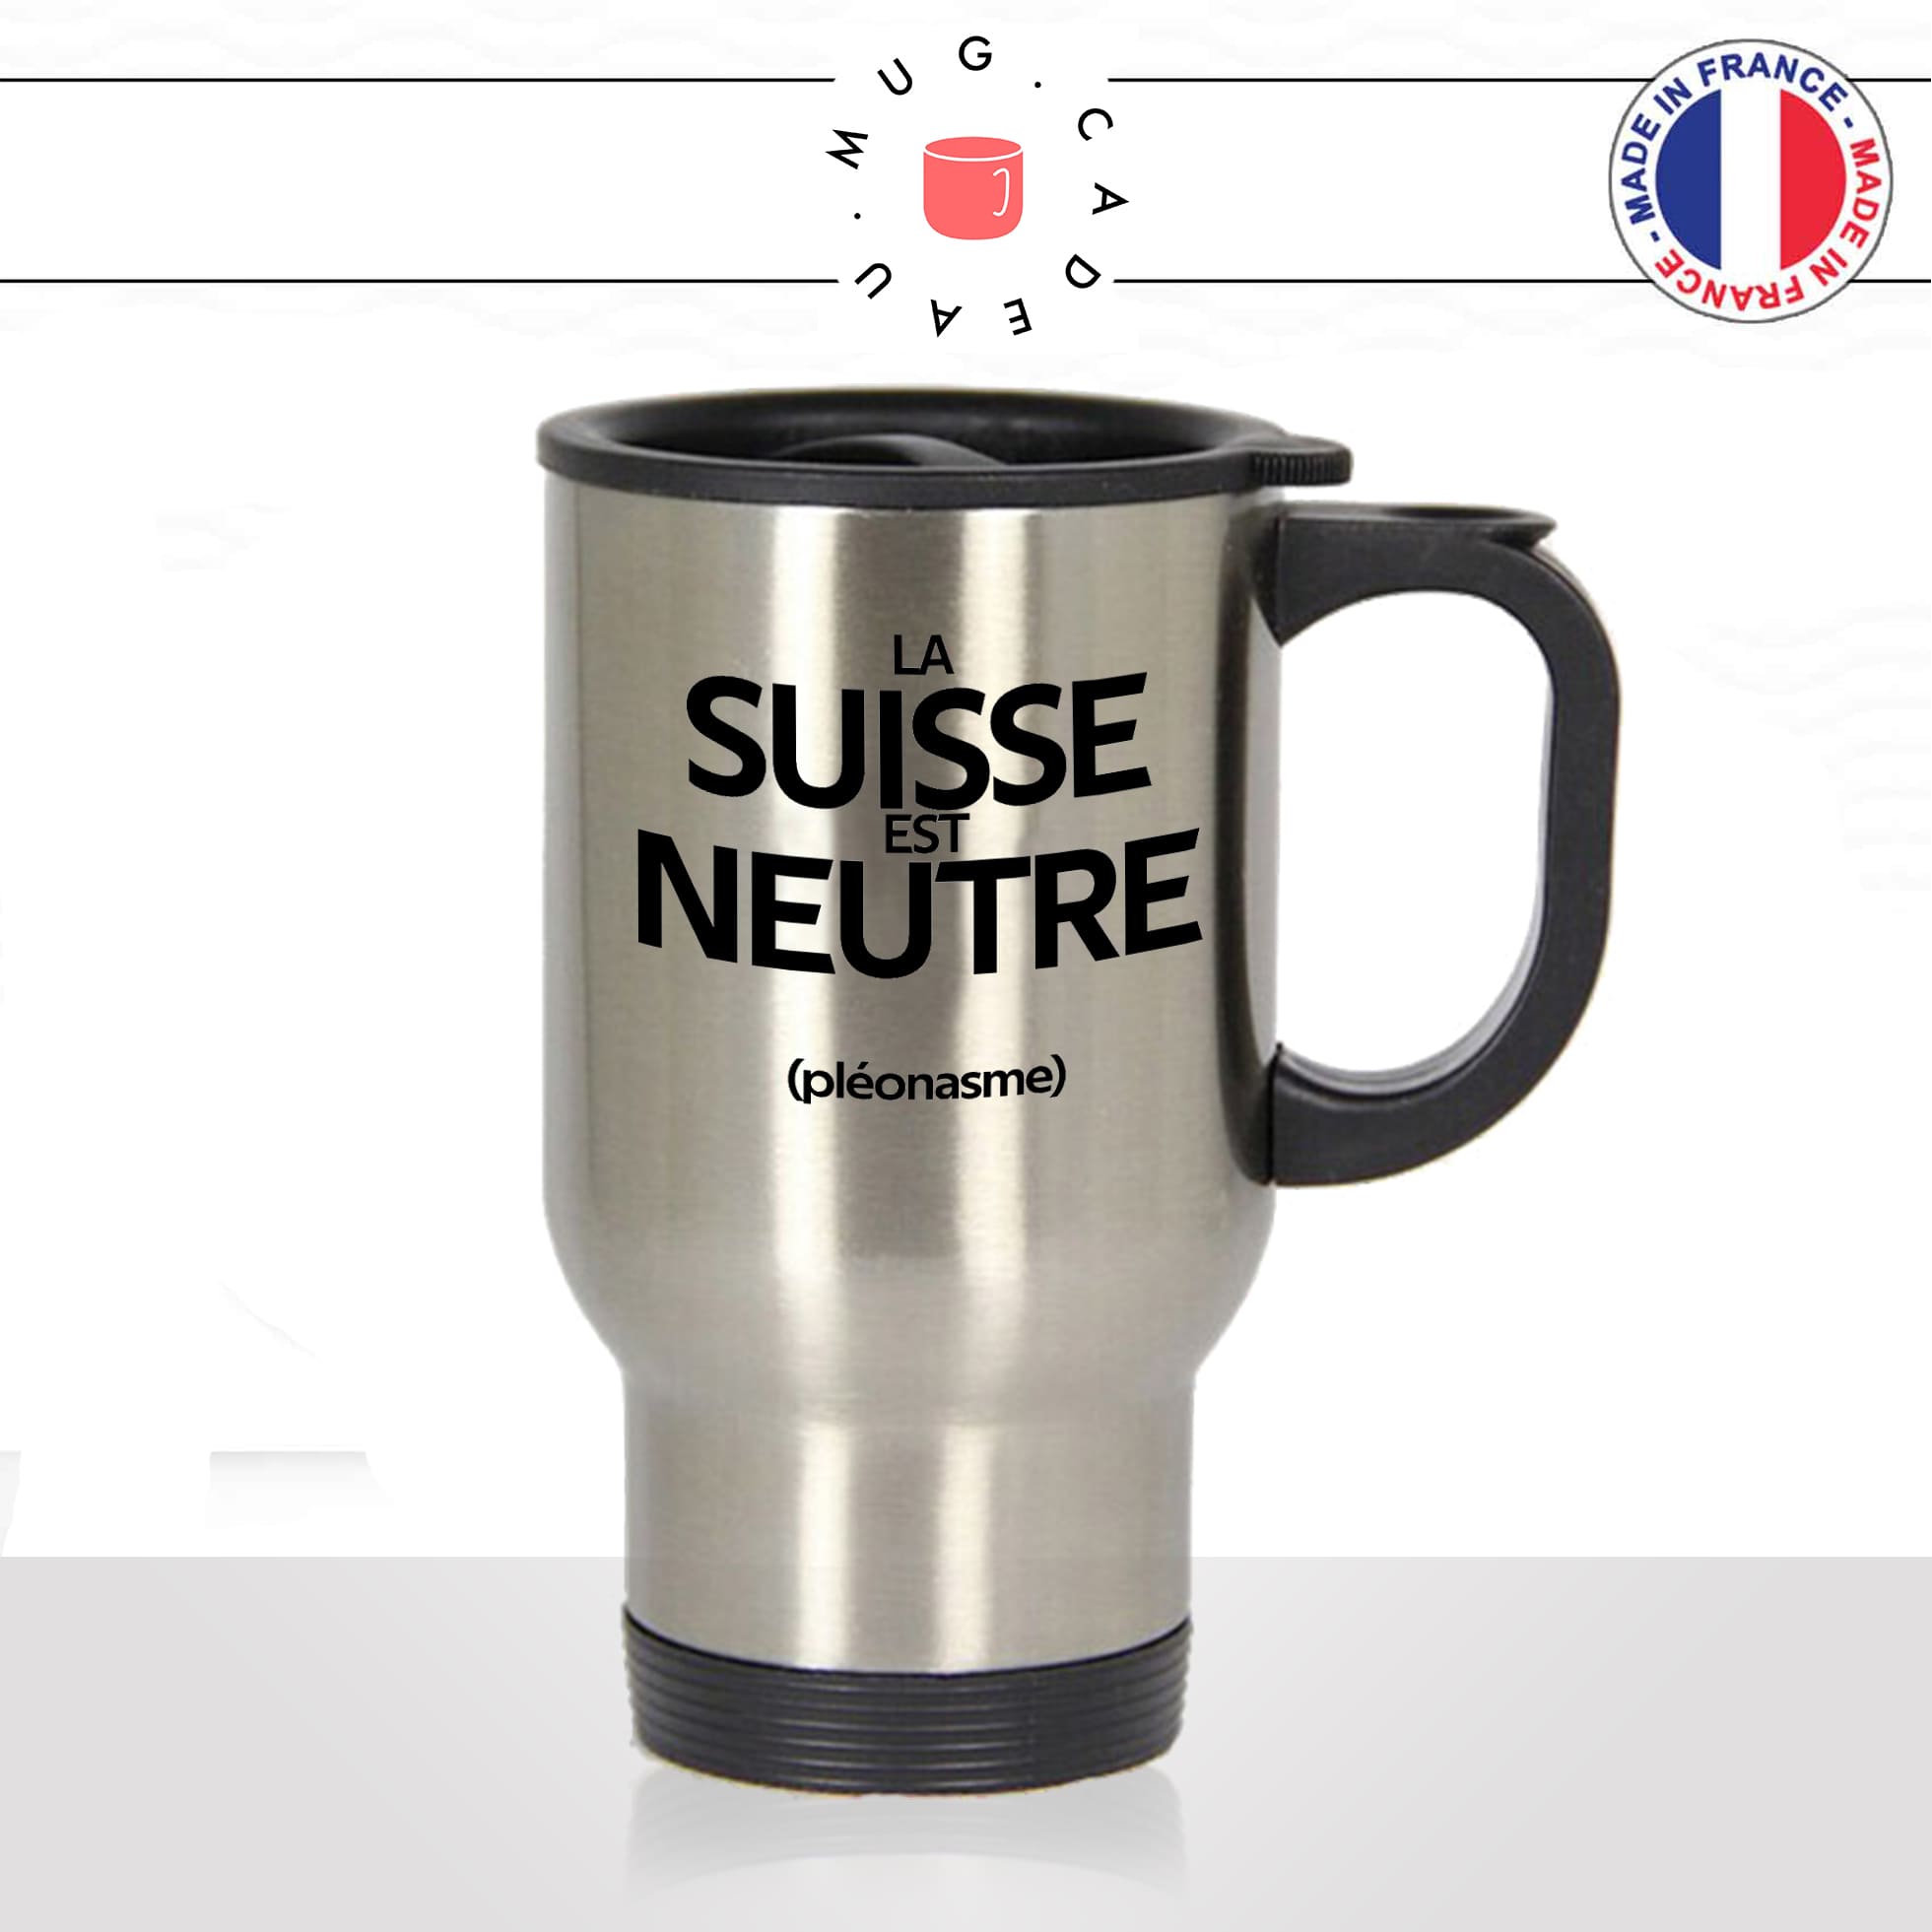 mug-tasse-thermos-isotherme-voyage-la-suisse-est-neutre-pleonasme-figure-de-style-francais-humour-fun-idée-cadeau-originale-cool2